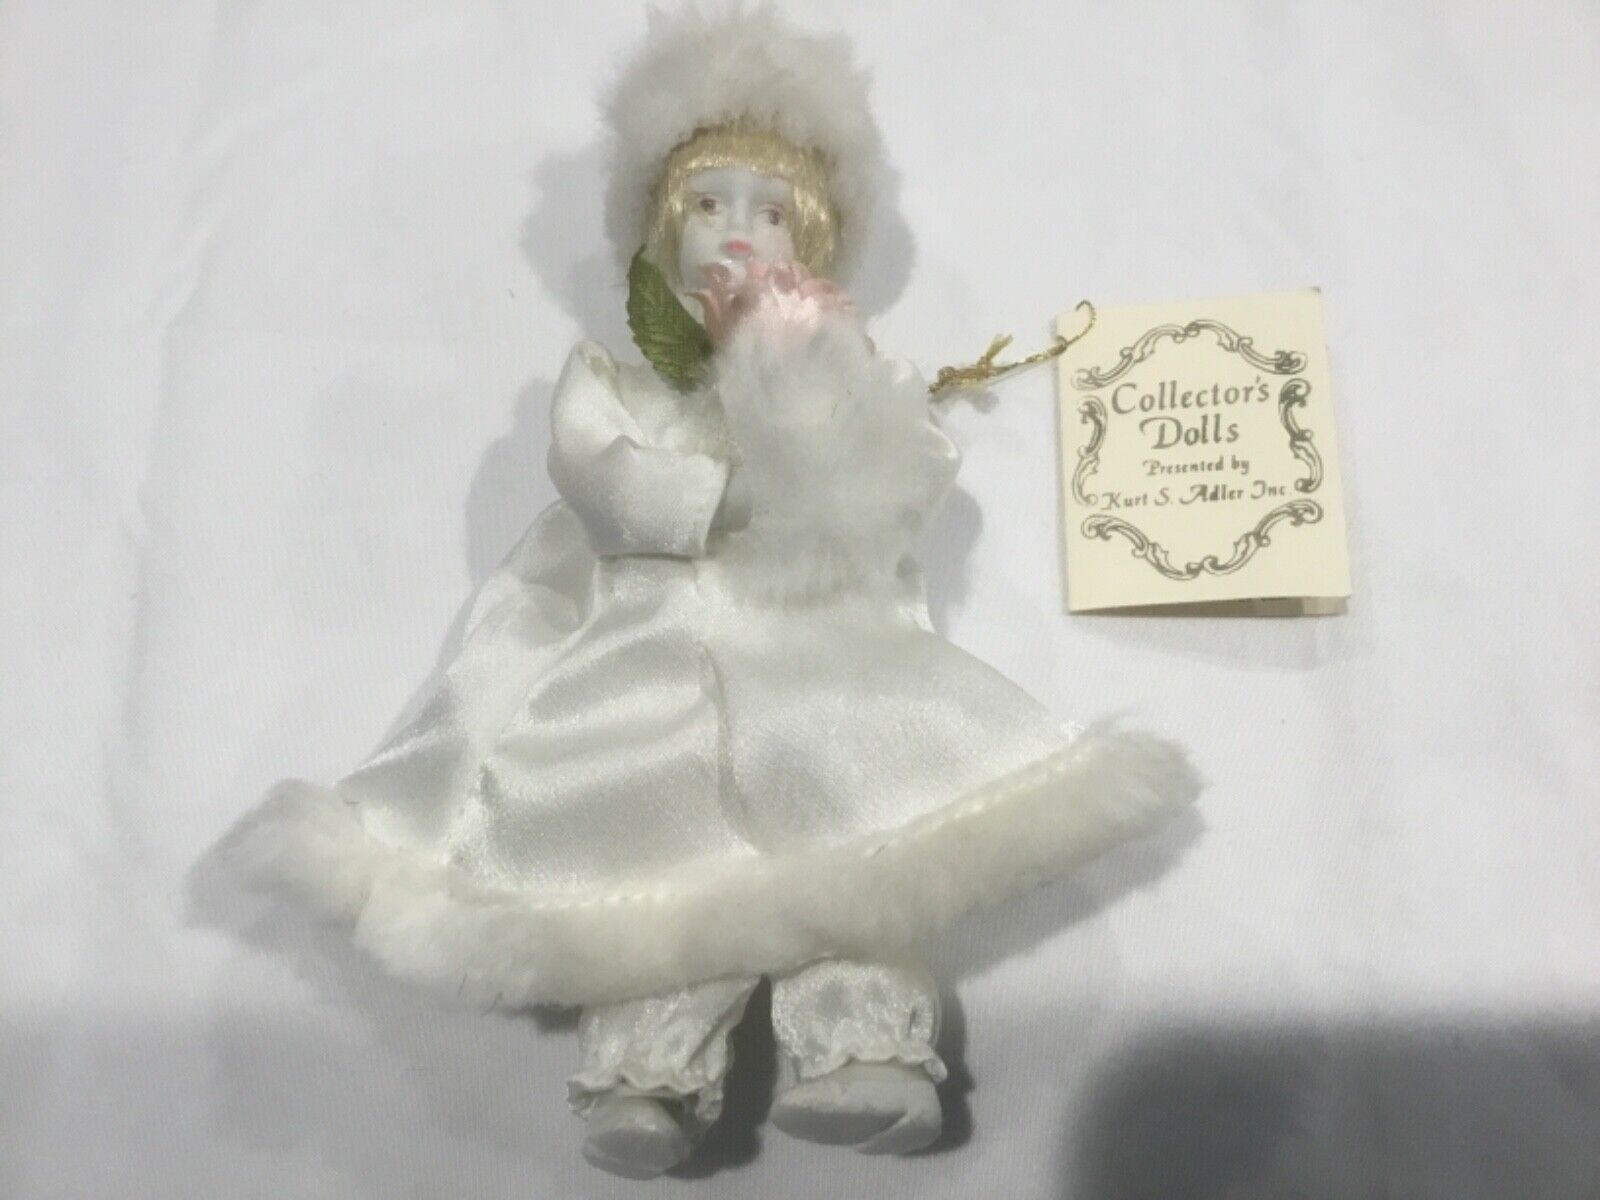 VINTAGE 1983 COLLECTOR’S DOLLS KURT S ADLER INC porcelain doll ornament 